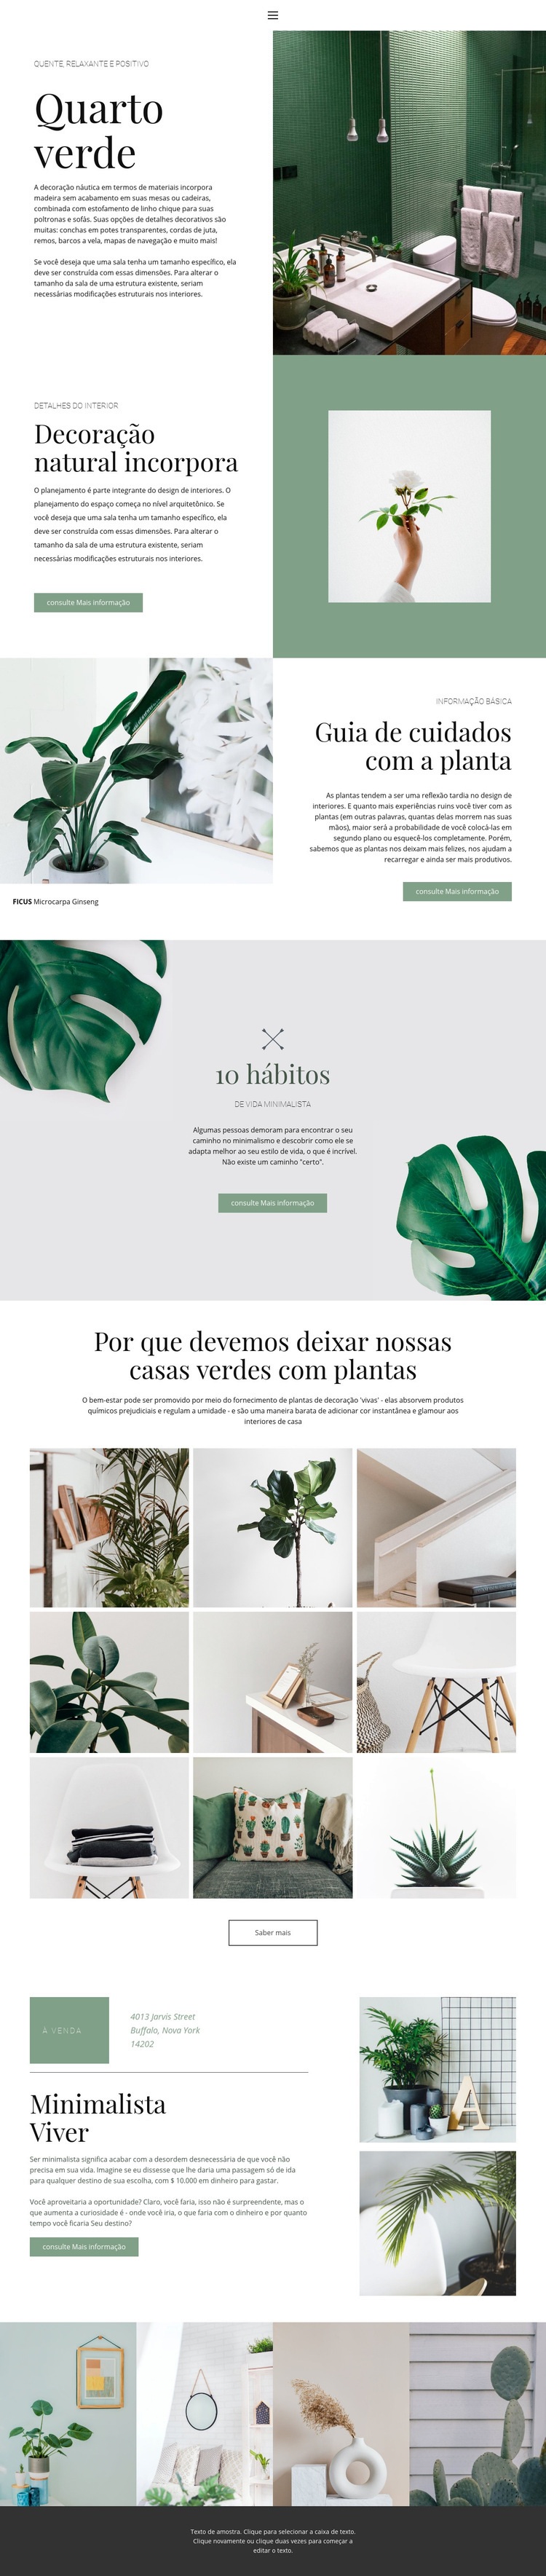 Detalhes verdes em casa Design do site